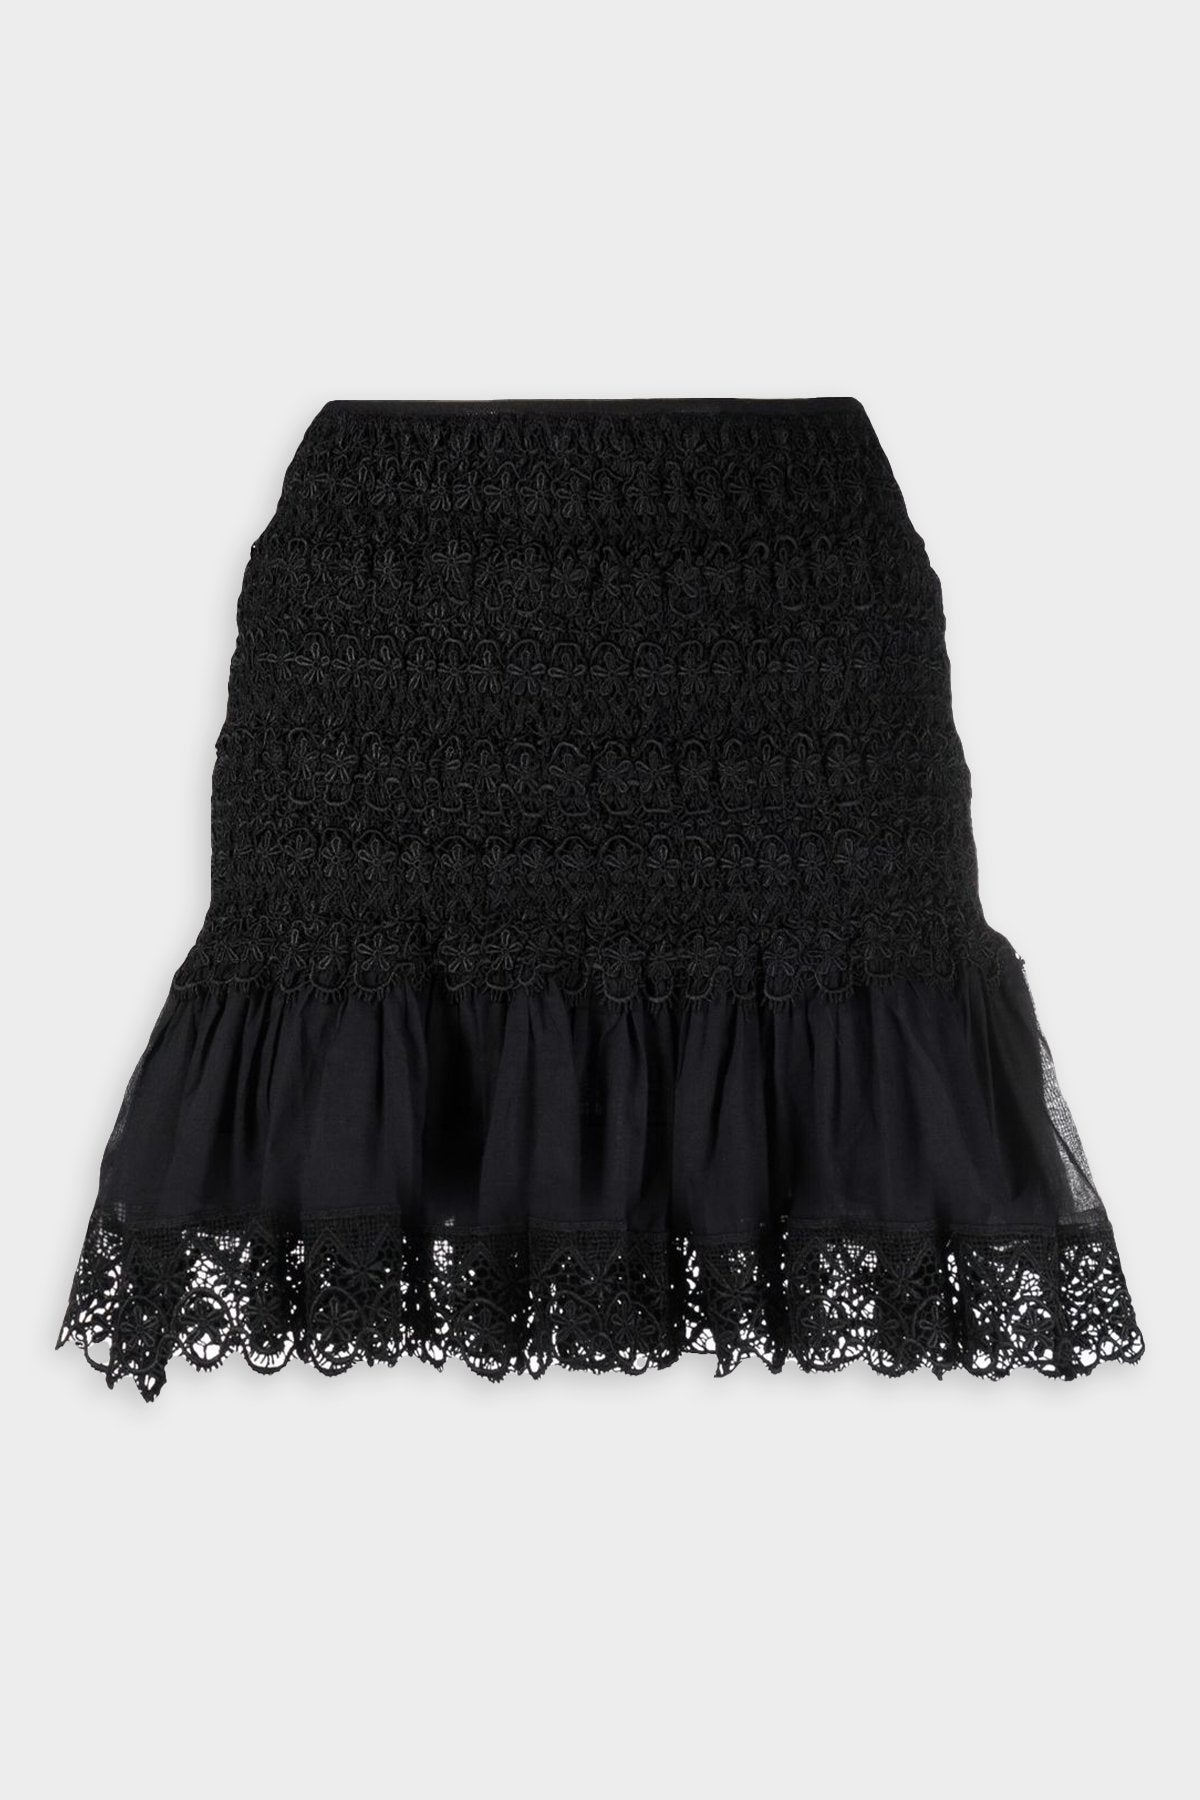 Fleur Short Skirt in Black - shop-olivia.com